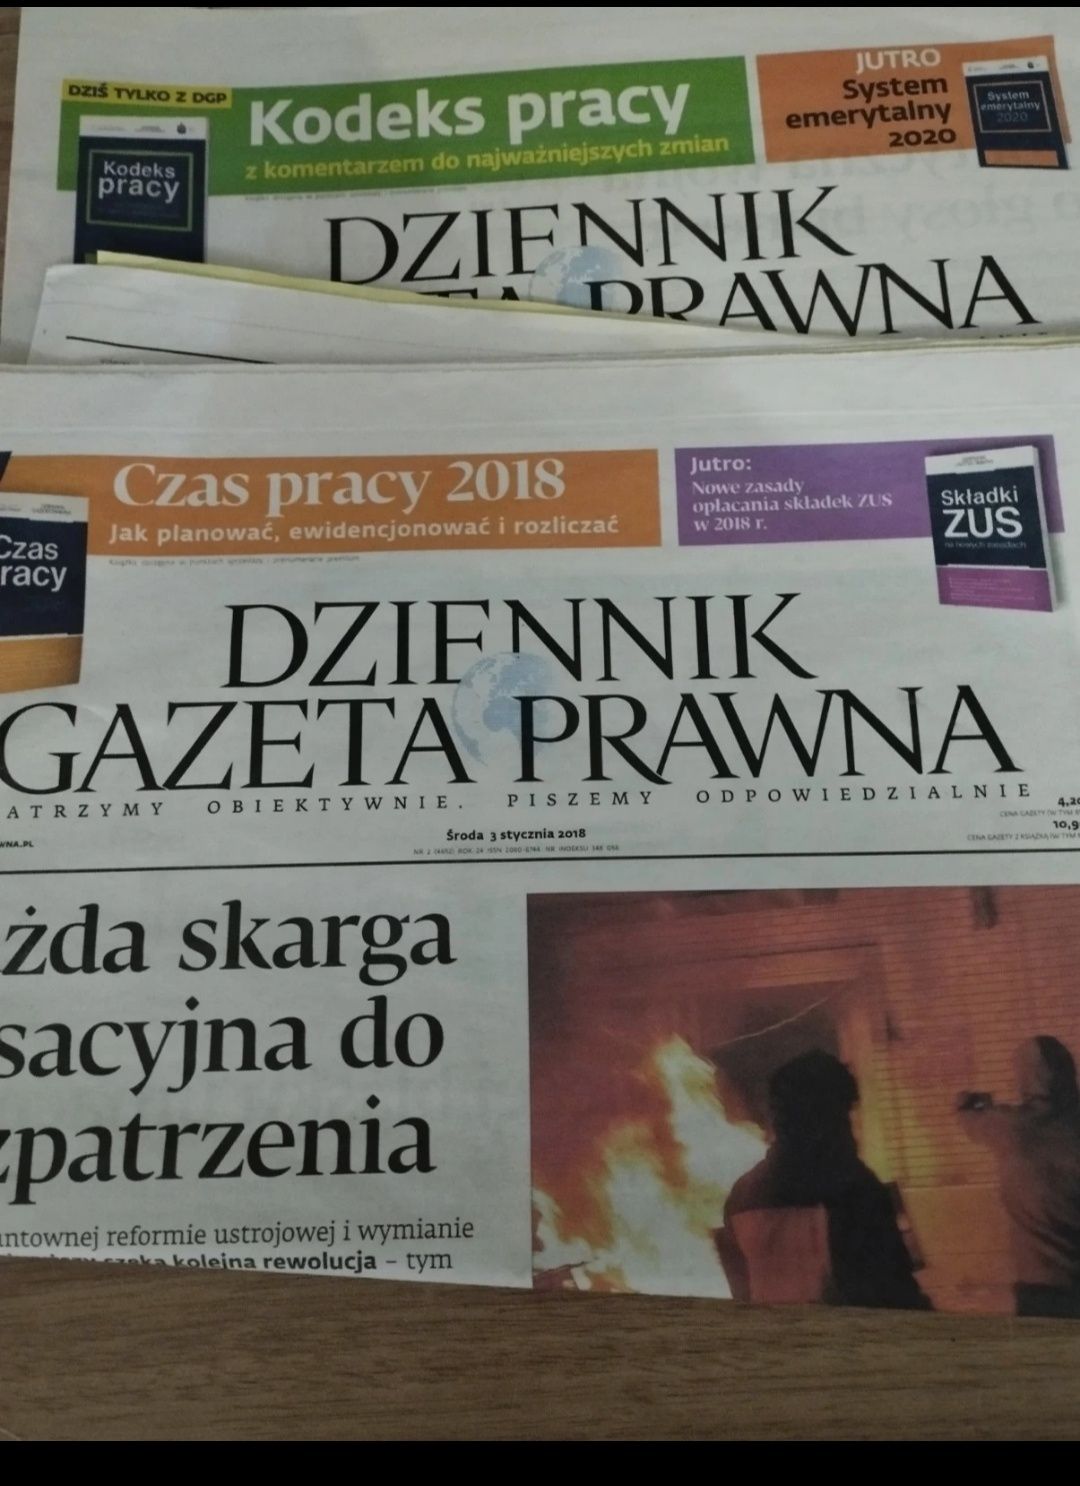 Gazeta prawna 4 szt
Rok 2x2017,2018,2019